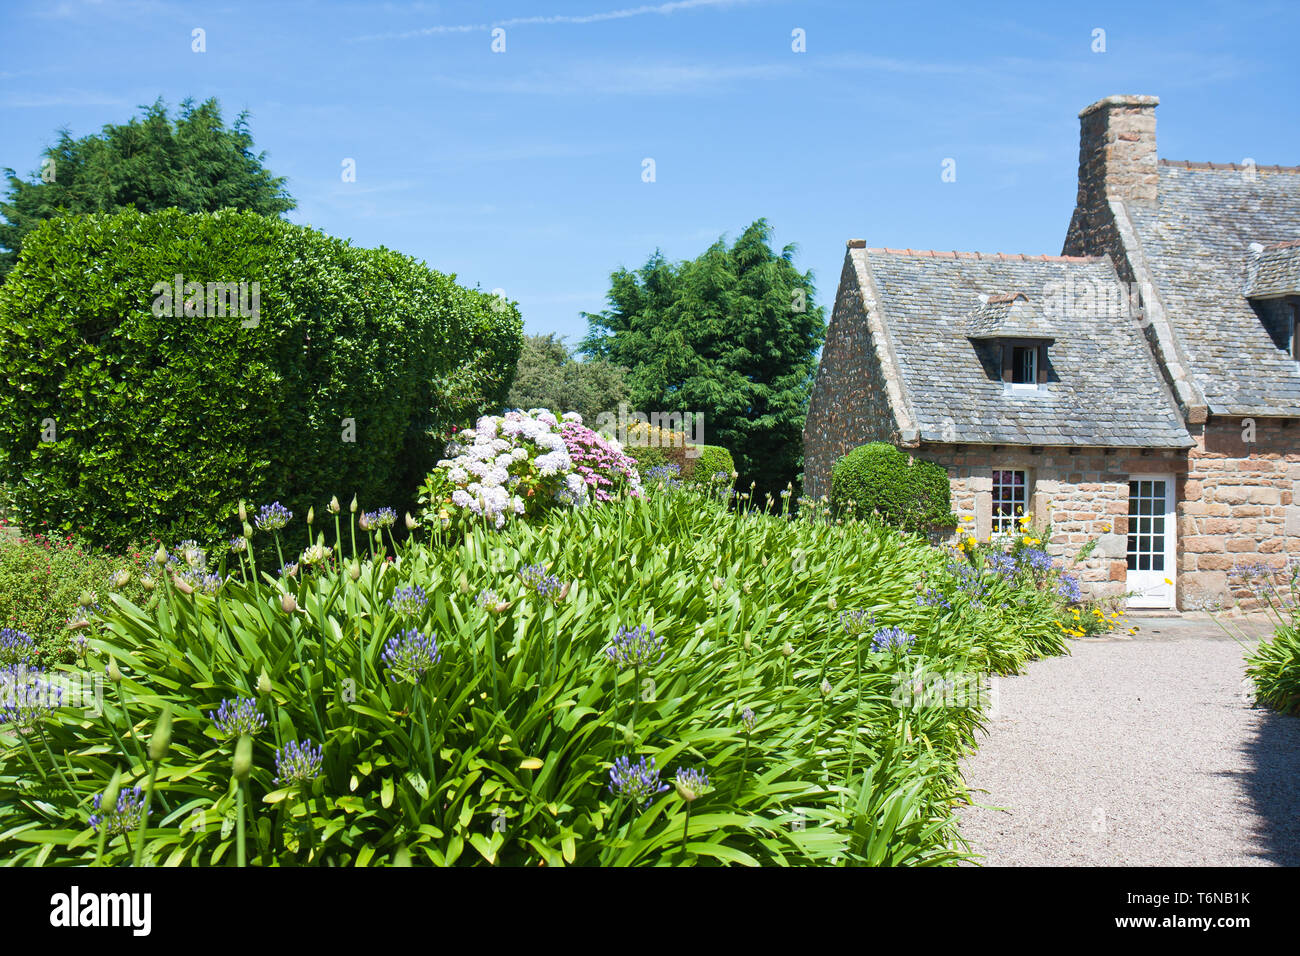 Maison traditionnelle avec jardin en Bretagne, France Banque D'Images